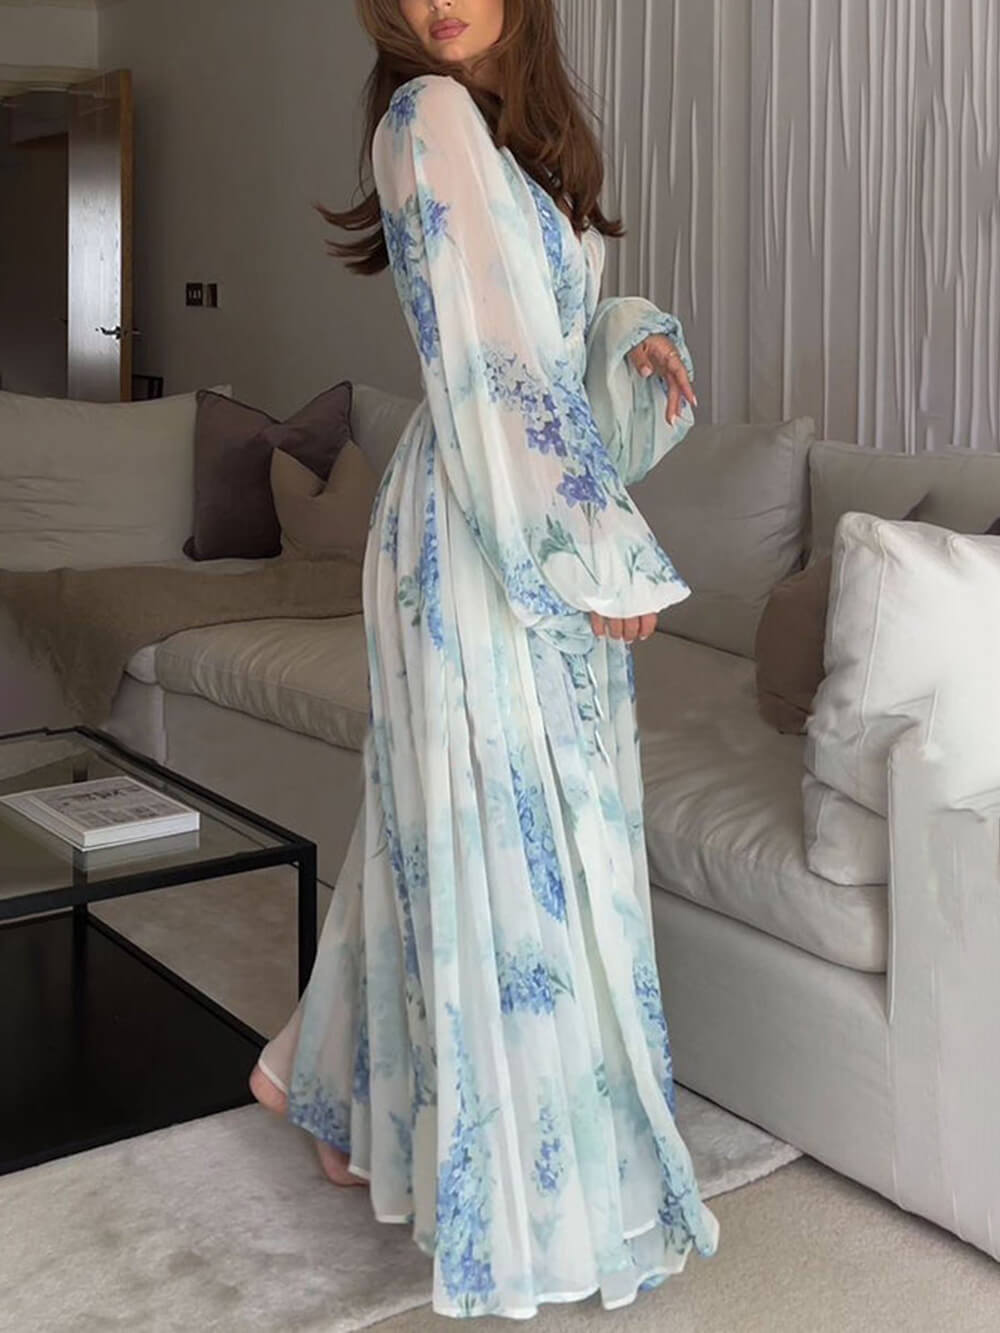 ओशियन फ्लावर शिफॉन फ्लोरल ड्रॉस्ट्रिंग कमर मैक्सी ड्रेस